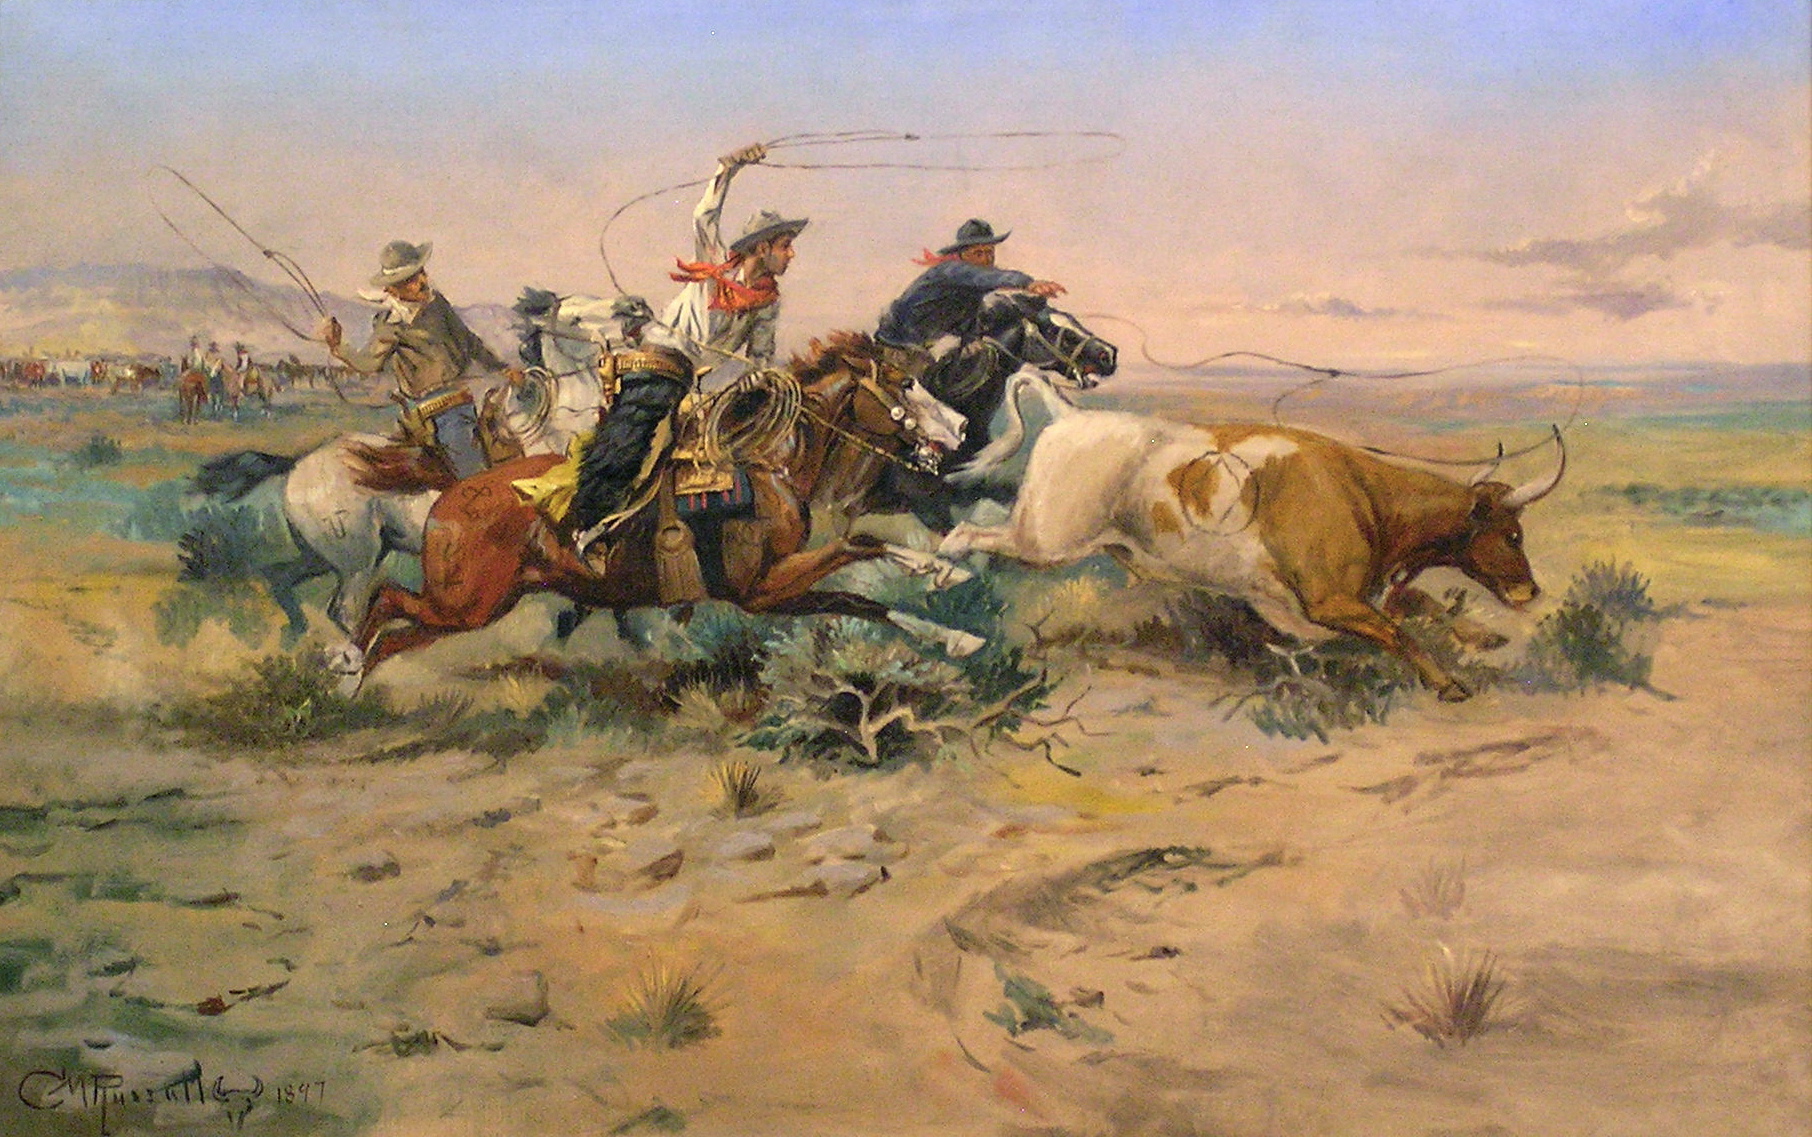 Cowboy - Wikipedia